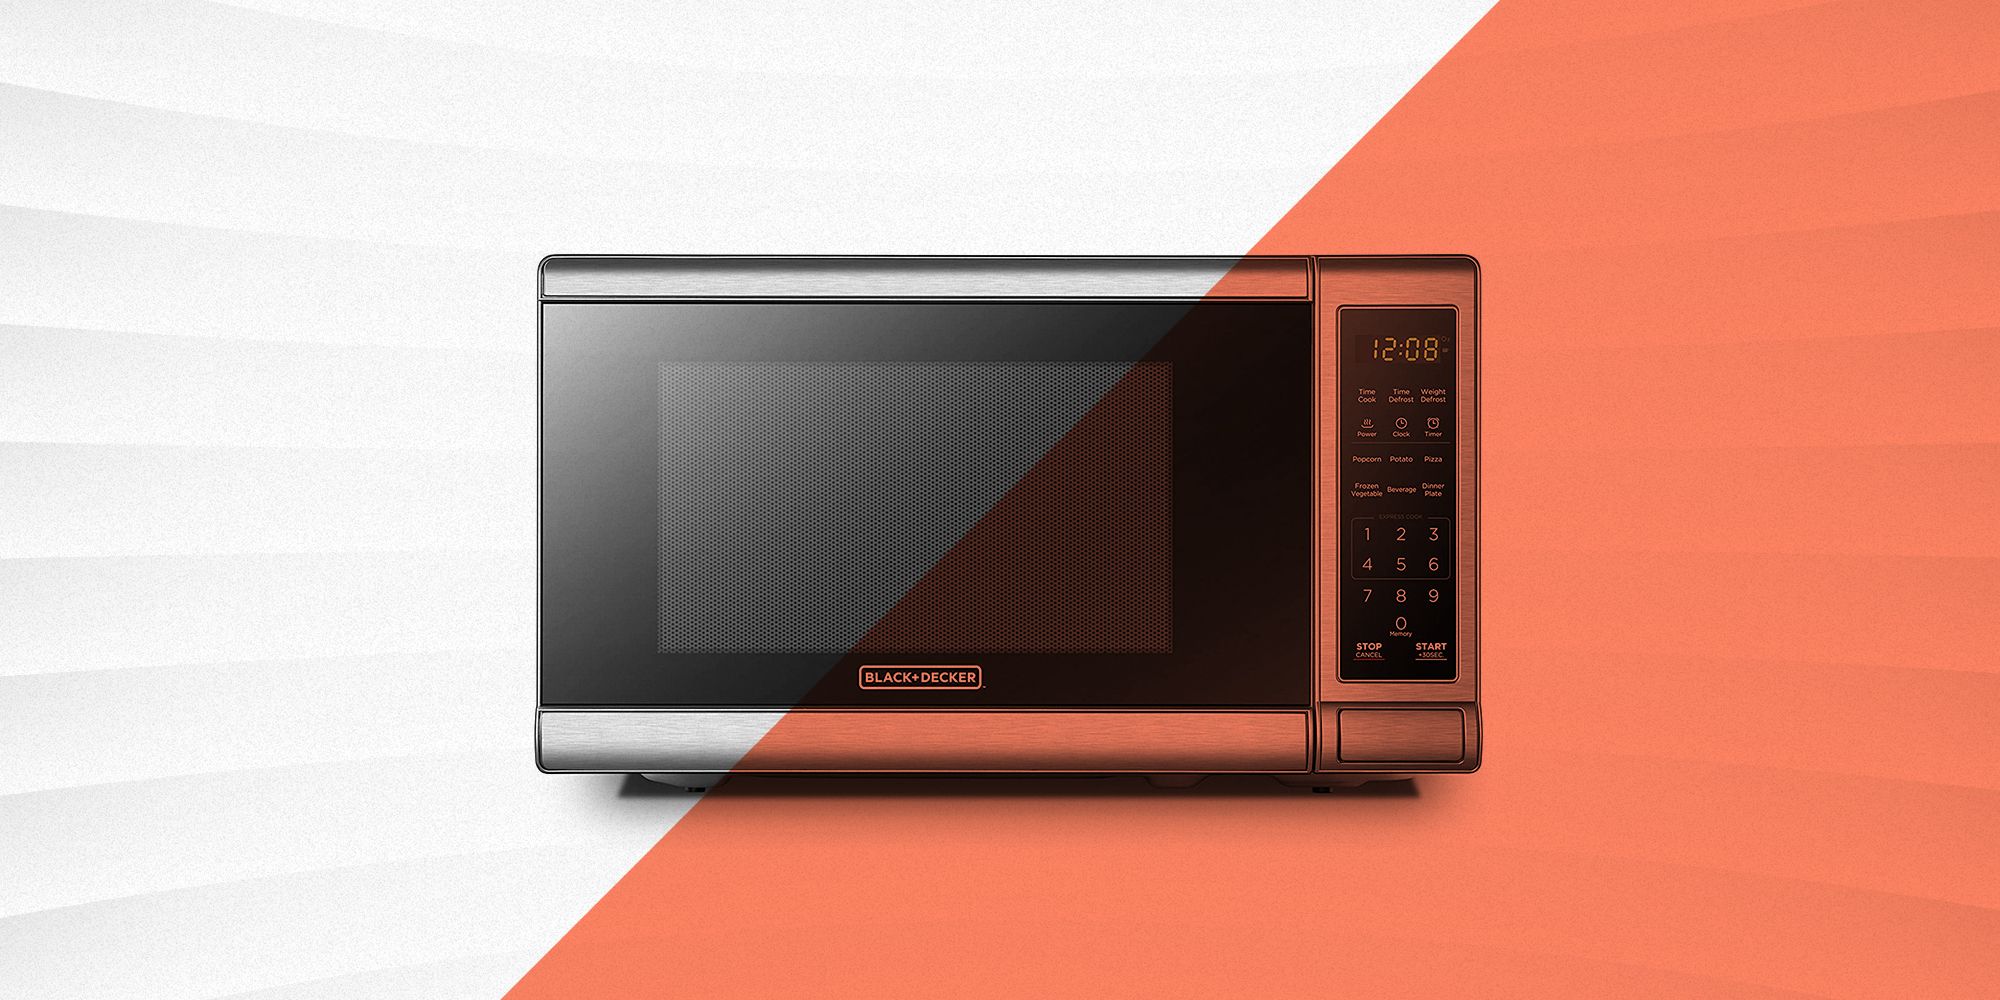 https://hips.hearstapps.com/hmg-prod/images/cheap-microwaves-652d441176122.jpg